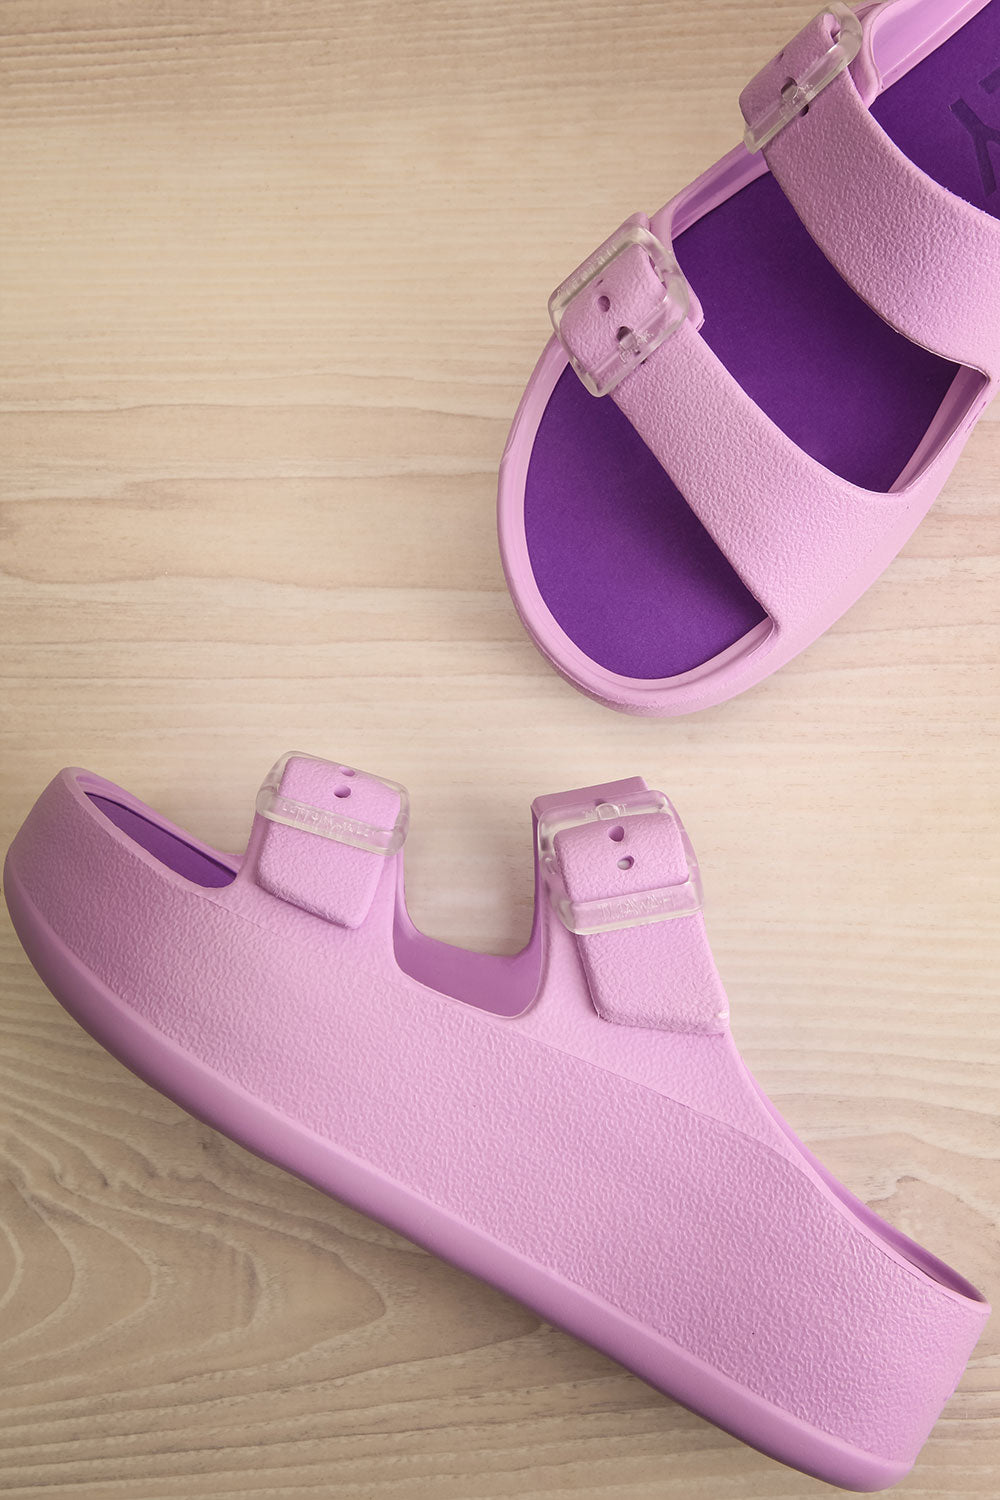 Fenix Lavender Double Buckle Platform Sandals | La petite garçonne flat view